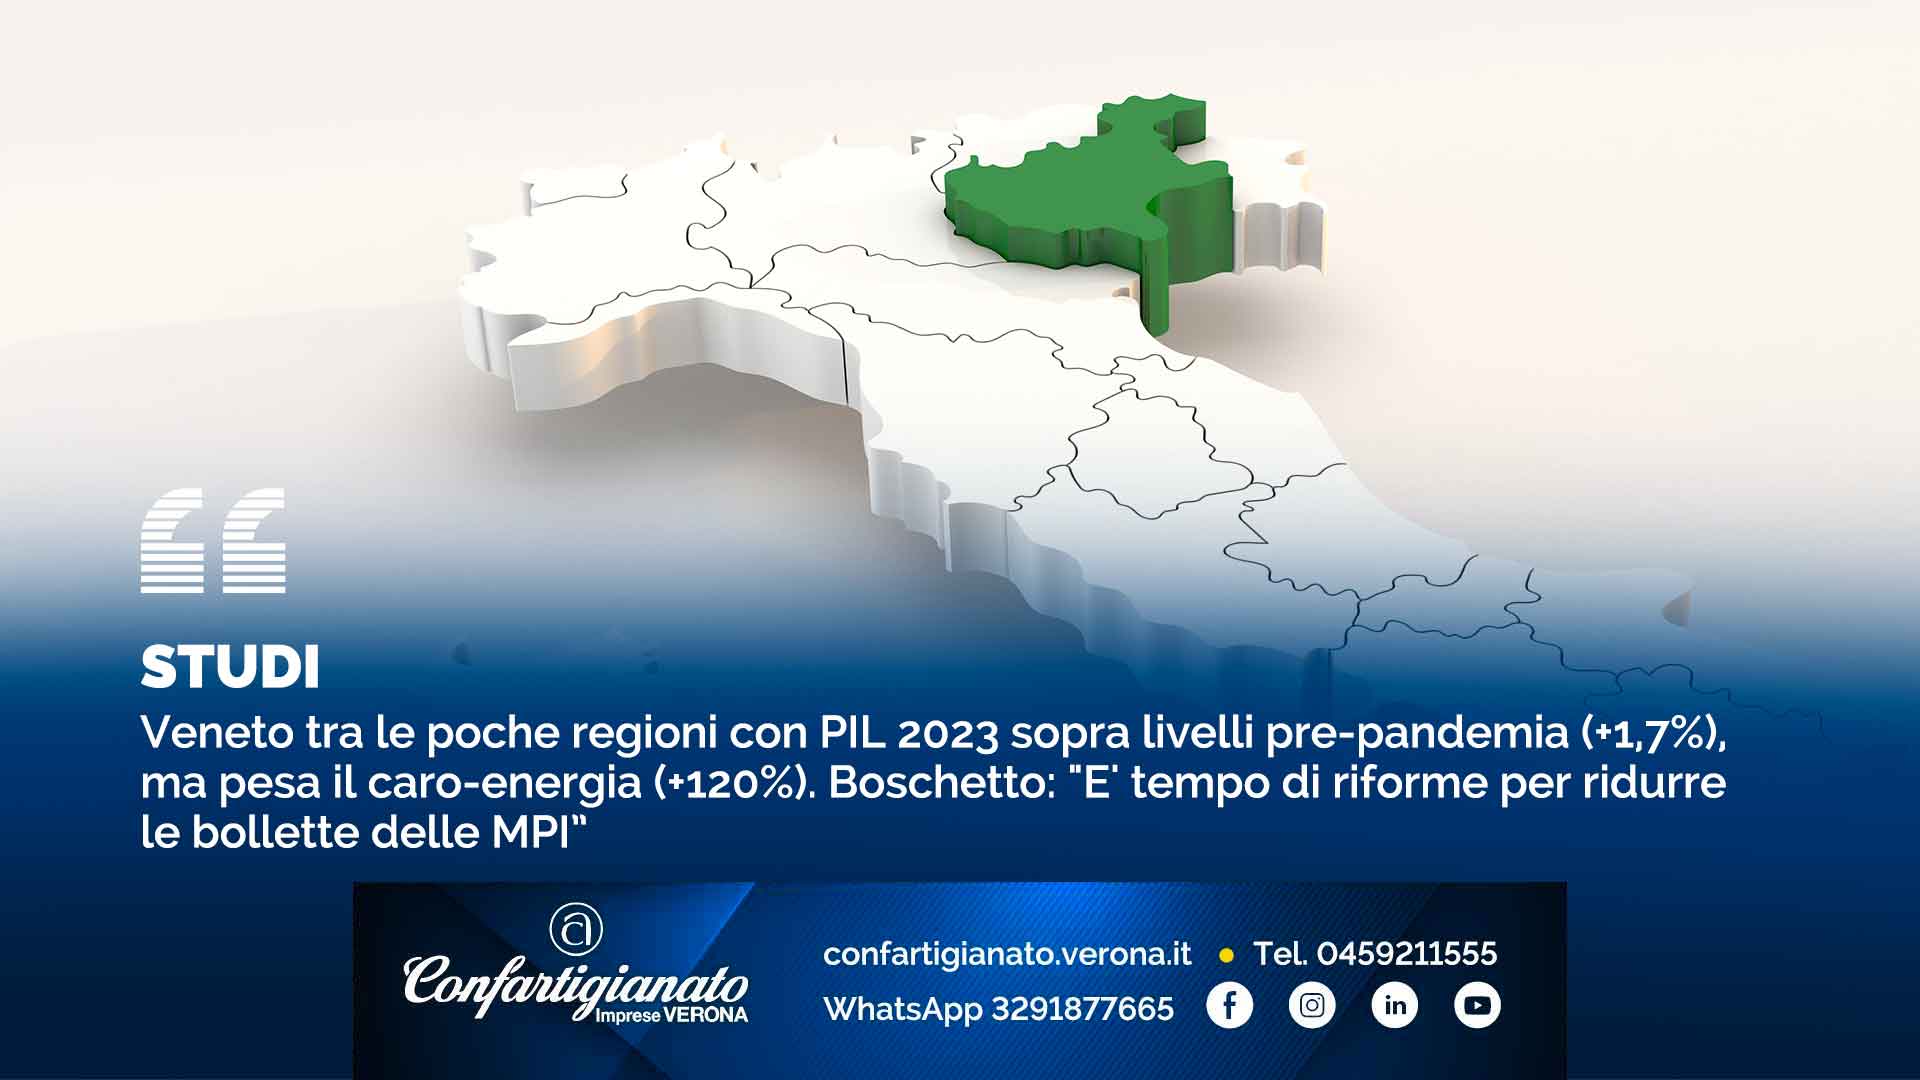 STUDI – Veneto tra le poche regioni con PIL 2023 sopra livelli pre-pandemia (+1,7%), ma pesa il caro-energia (+120%). Boschetto: "E' tempo di riforme per ridurre le bollette delle MPI”